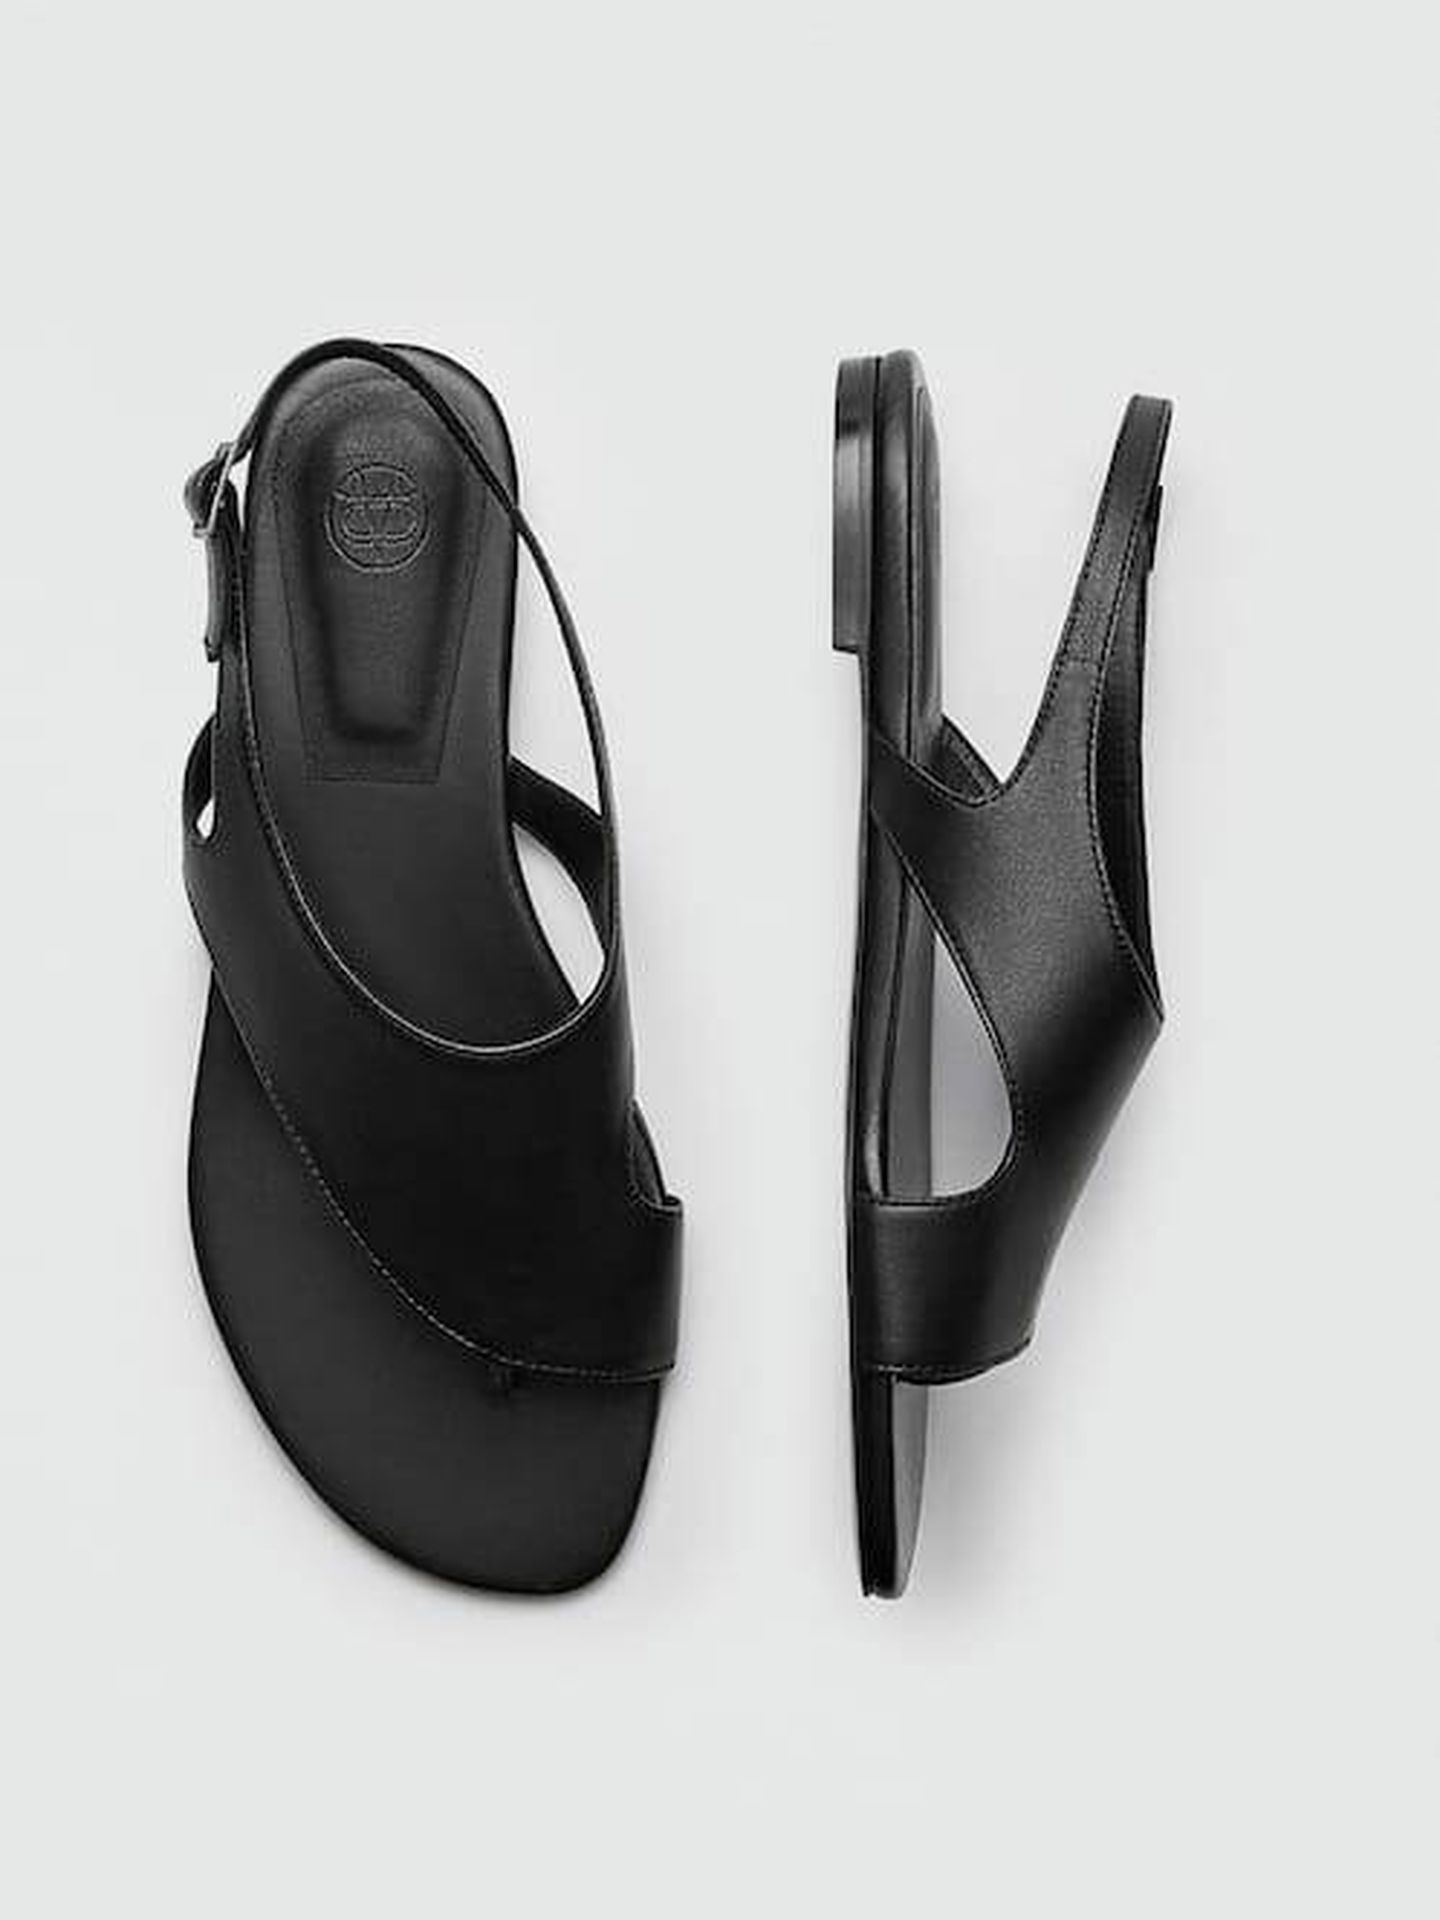 Las sandalias planas de la tienda online Massimo Dutti. (Cortesía)